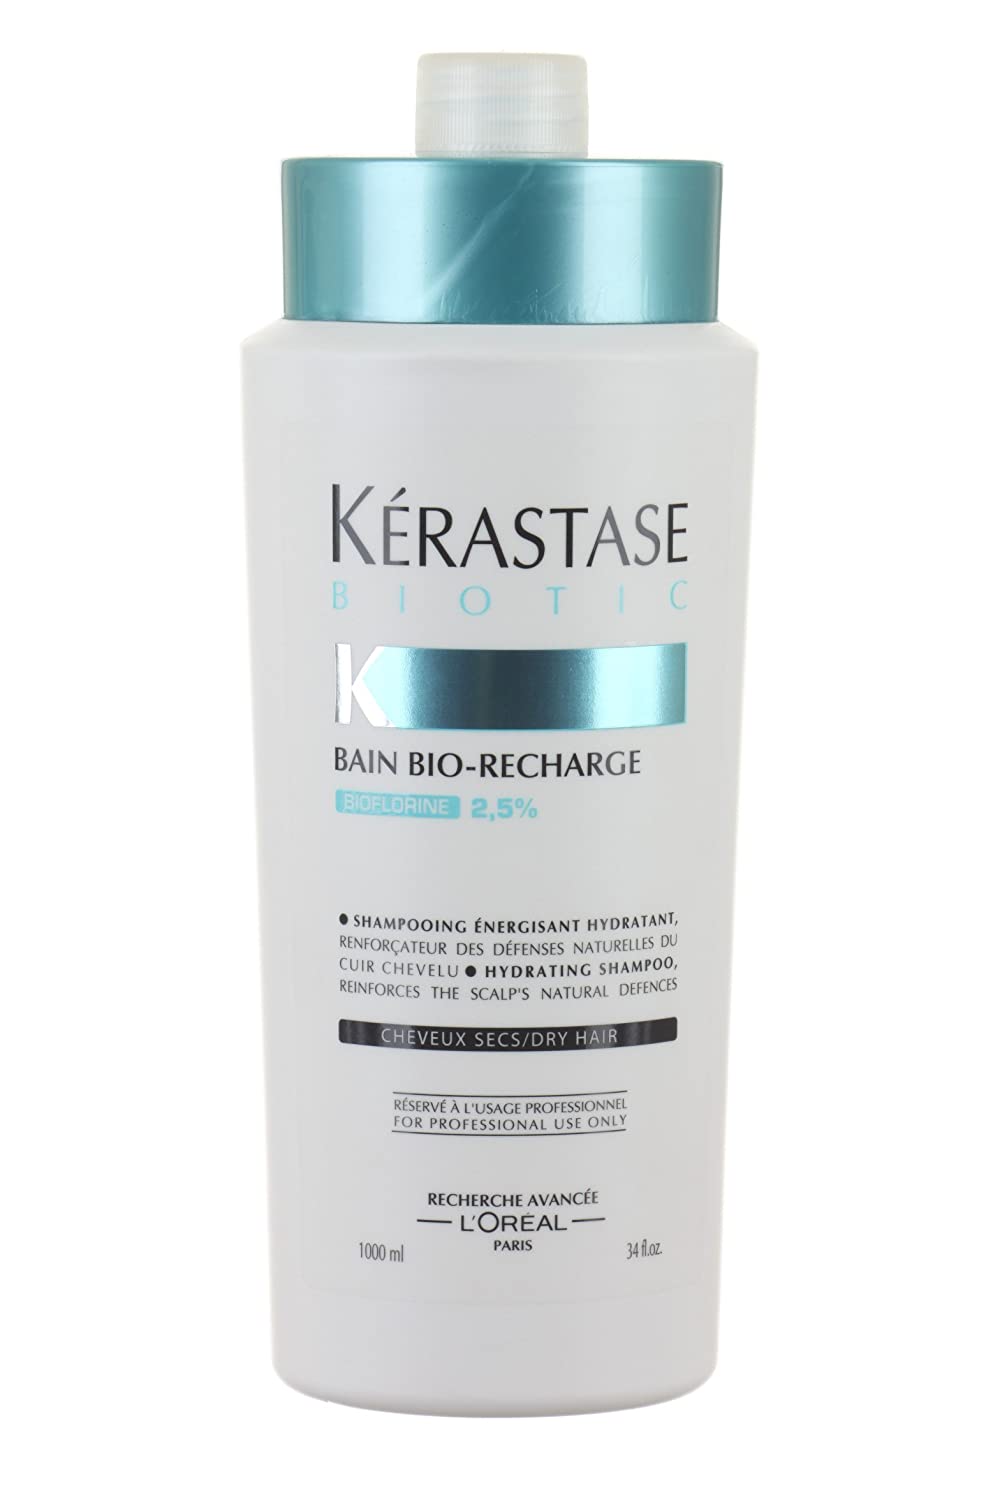 Kerastase Kérastase Biotic Bain Bio Recharge Shampoo, 1000 ml